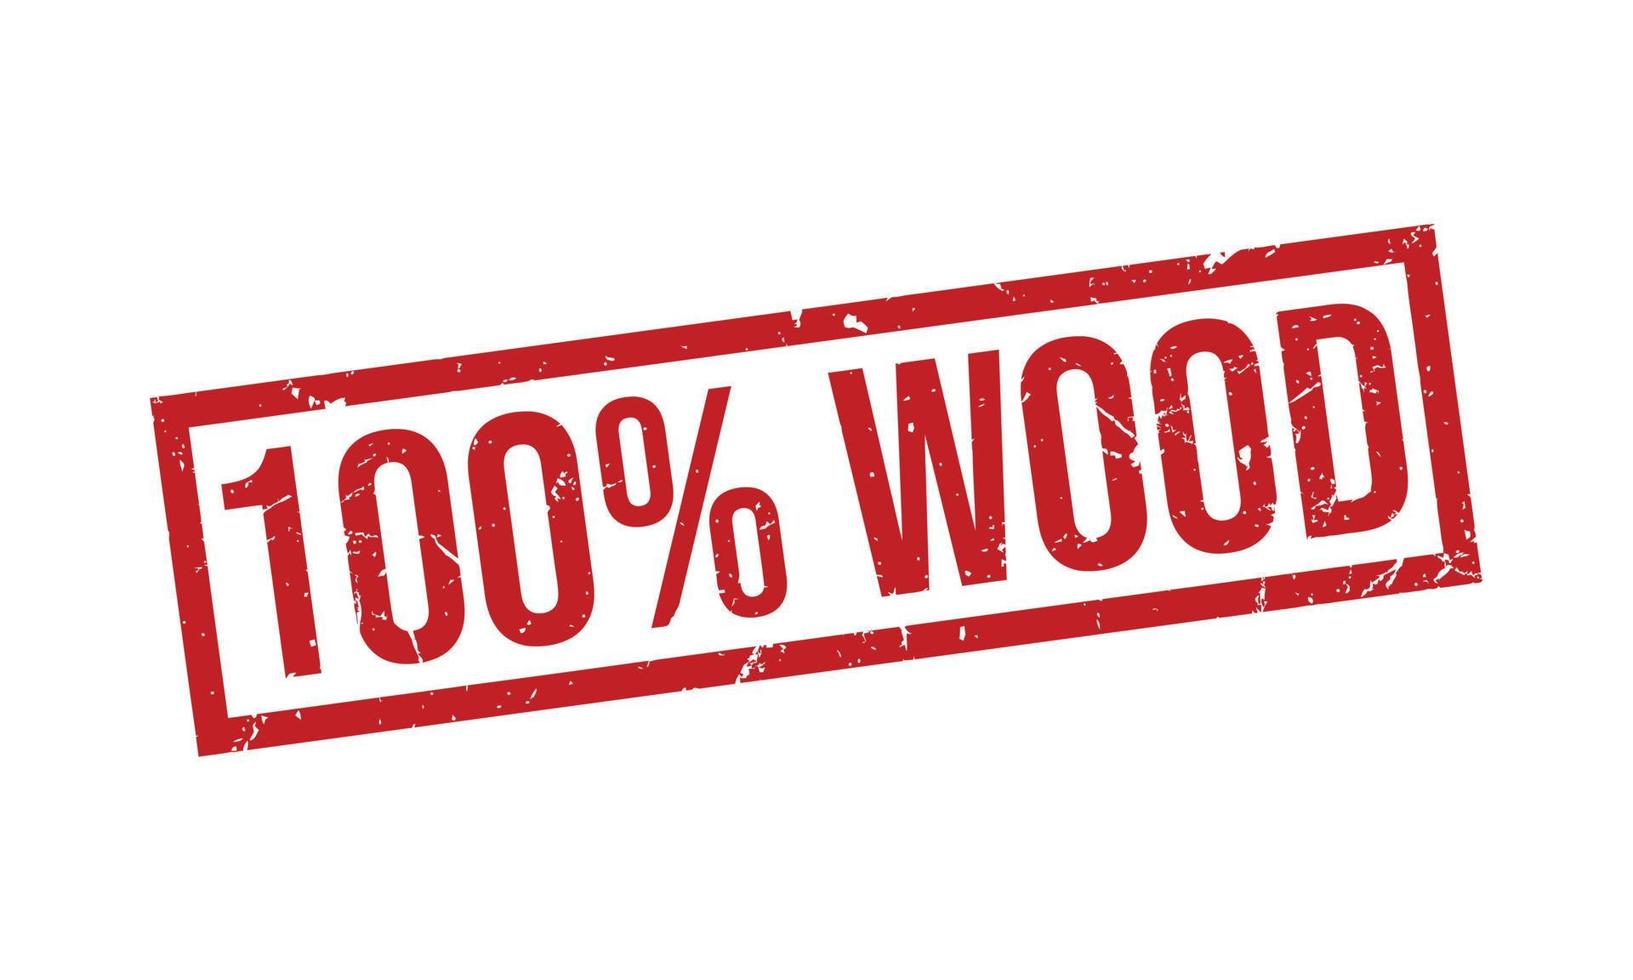 100 por ciento madera caucho sello vector